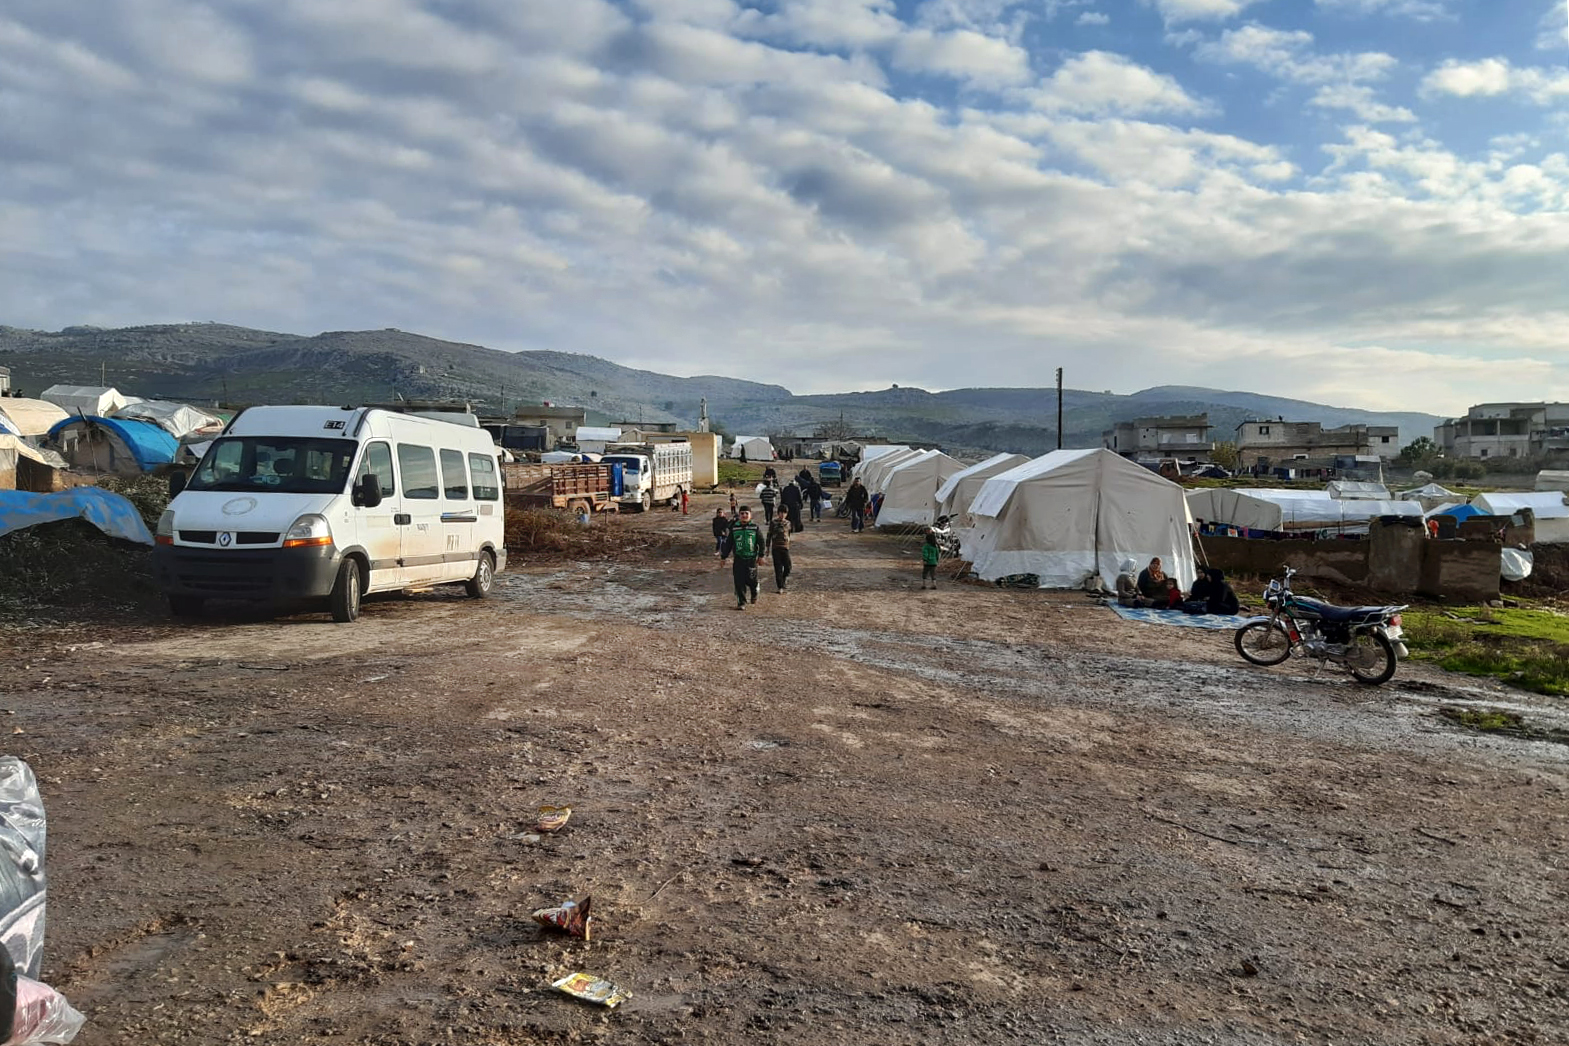 In het kamp van Jebel Harem in het noordweqsten van Syrië wonen zo'n 120 gezinnen, op de vlucht voor het militair1 offensief van de Syrusche regering. © AZG, januari 2020.